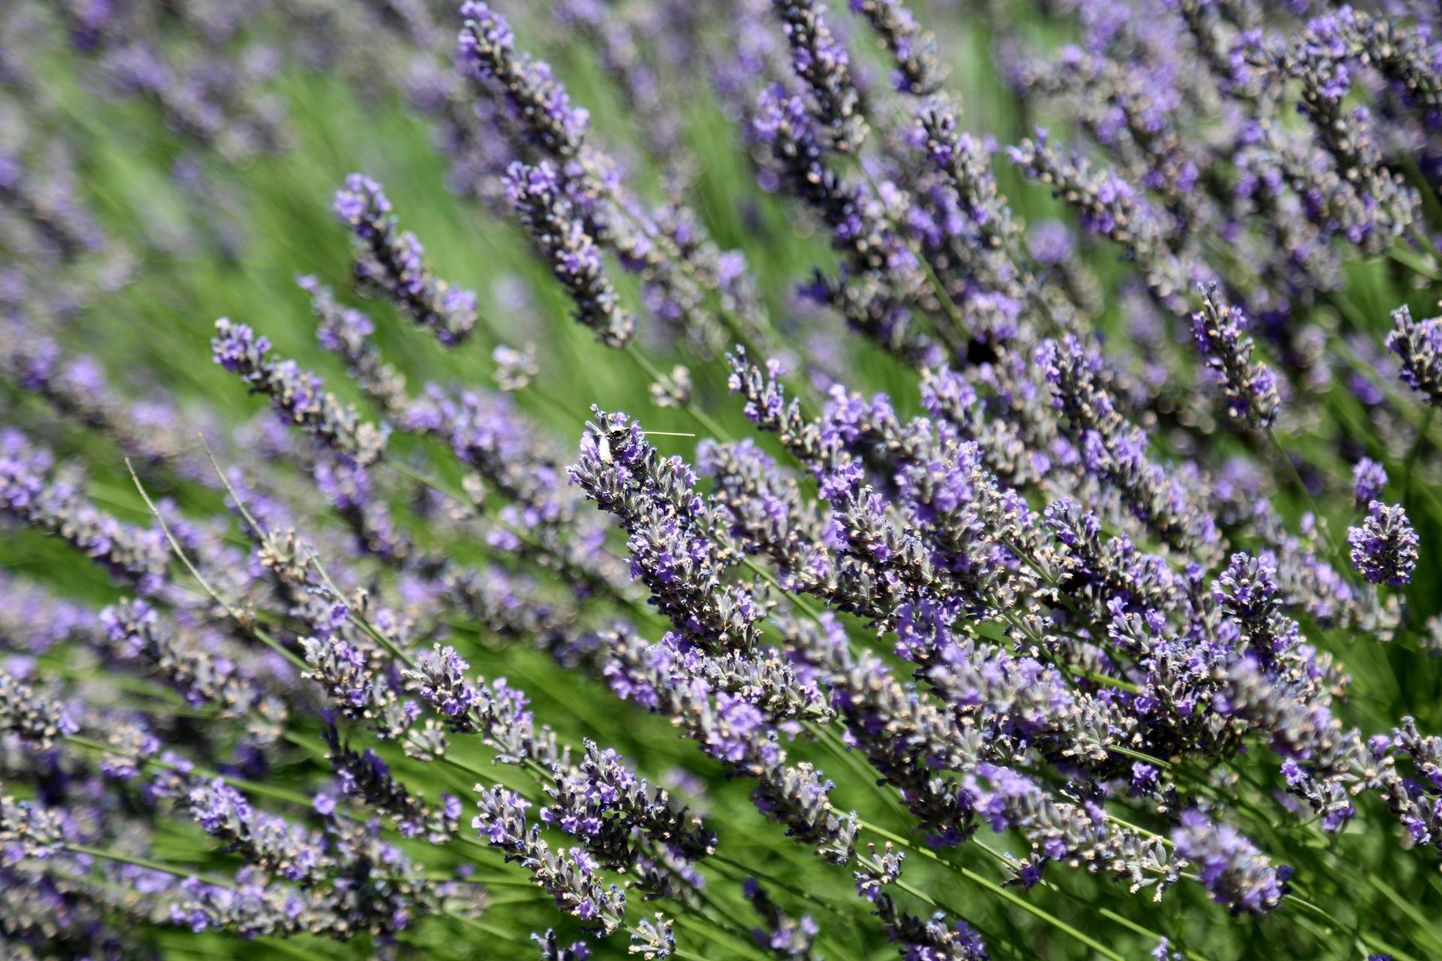 Meie koduaia lavendlitest saab edukalt lavendliõli valmistada. FOTO: Karina Hessland, Www.imago-images.de/scanpix